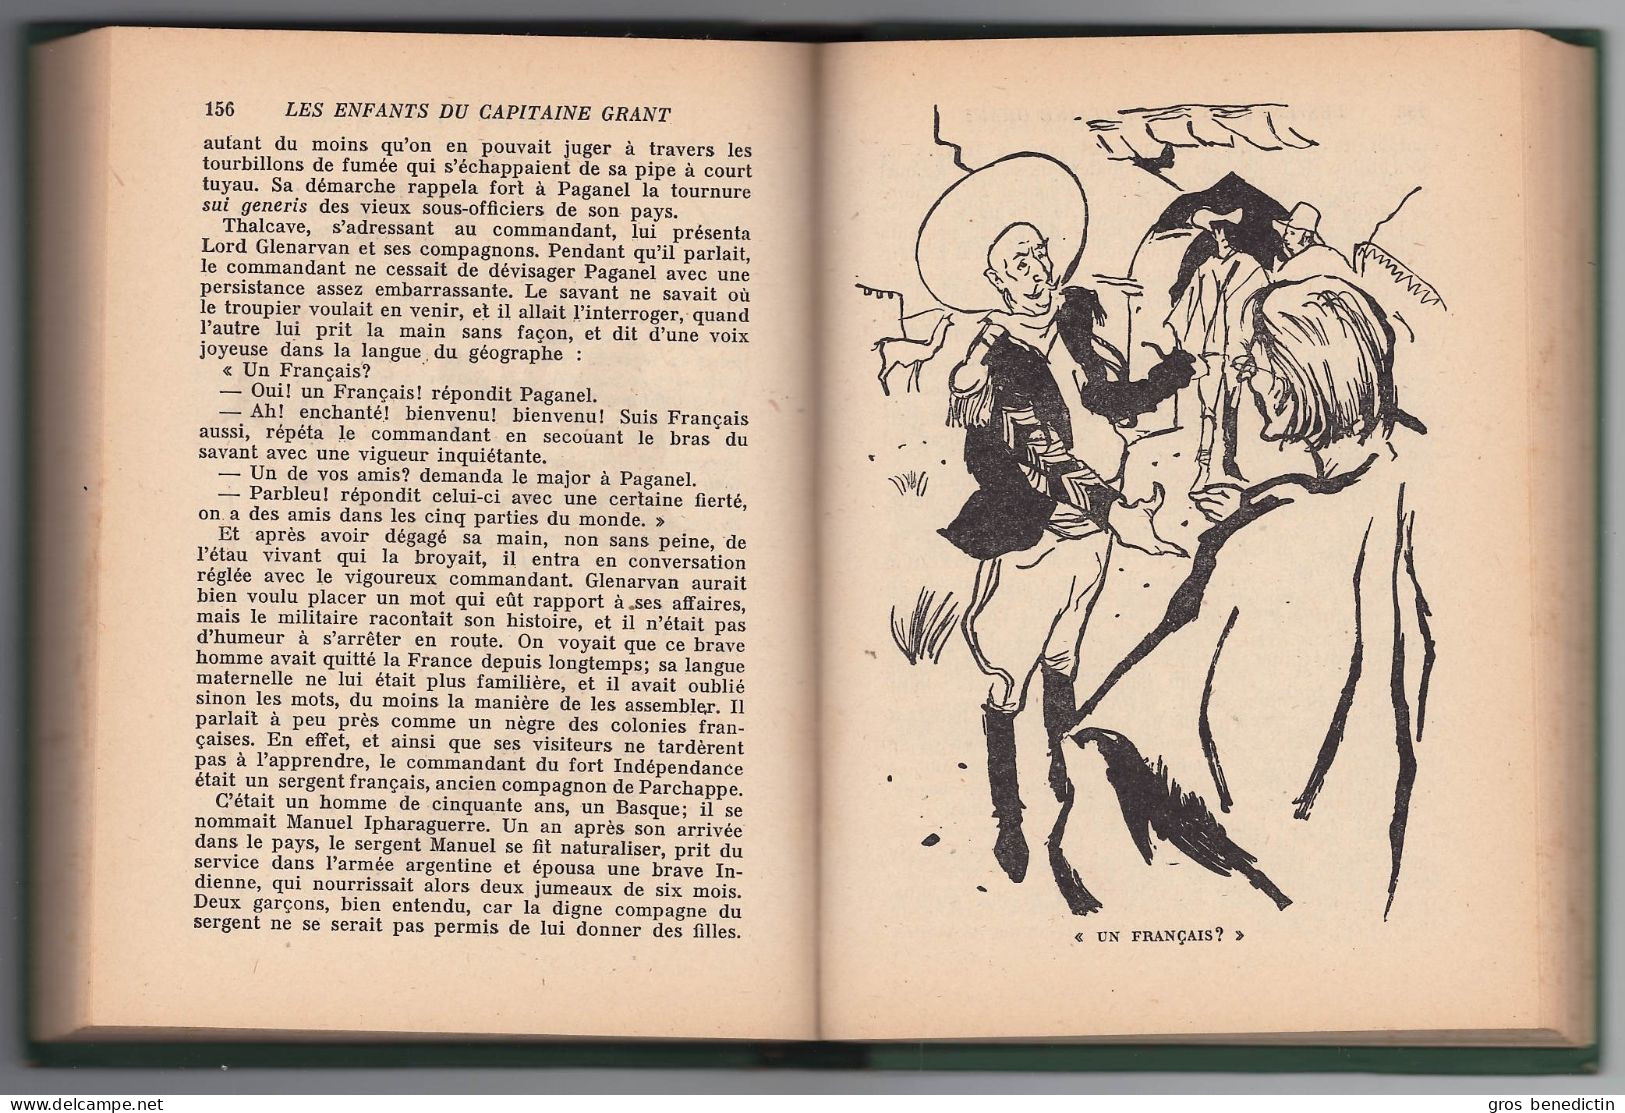 Hachette - Bibliothèque Verte Avec Jaquette N°240 -  Jules Verne - "Les Enfants Du Capitaine Grant (Tome 1)" - 1957 - Bibliotheque Verte